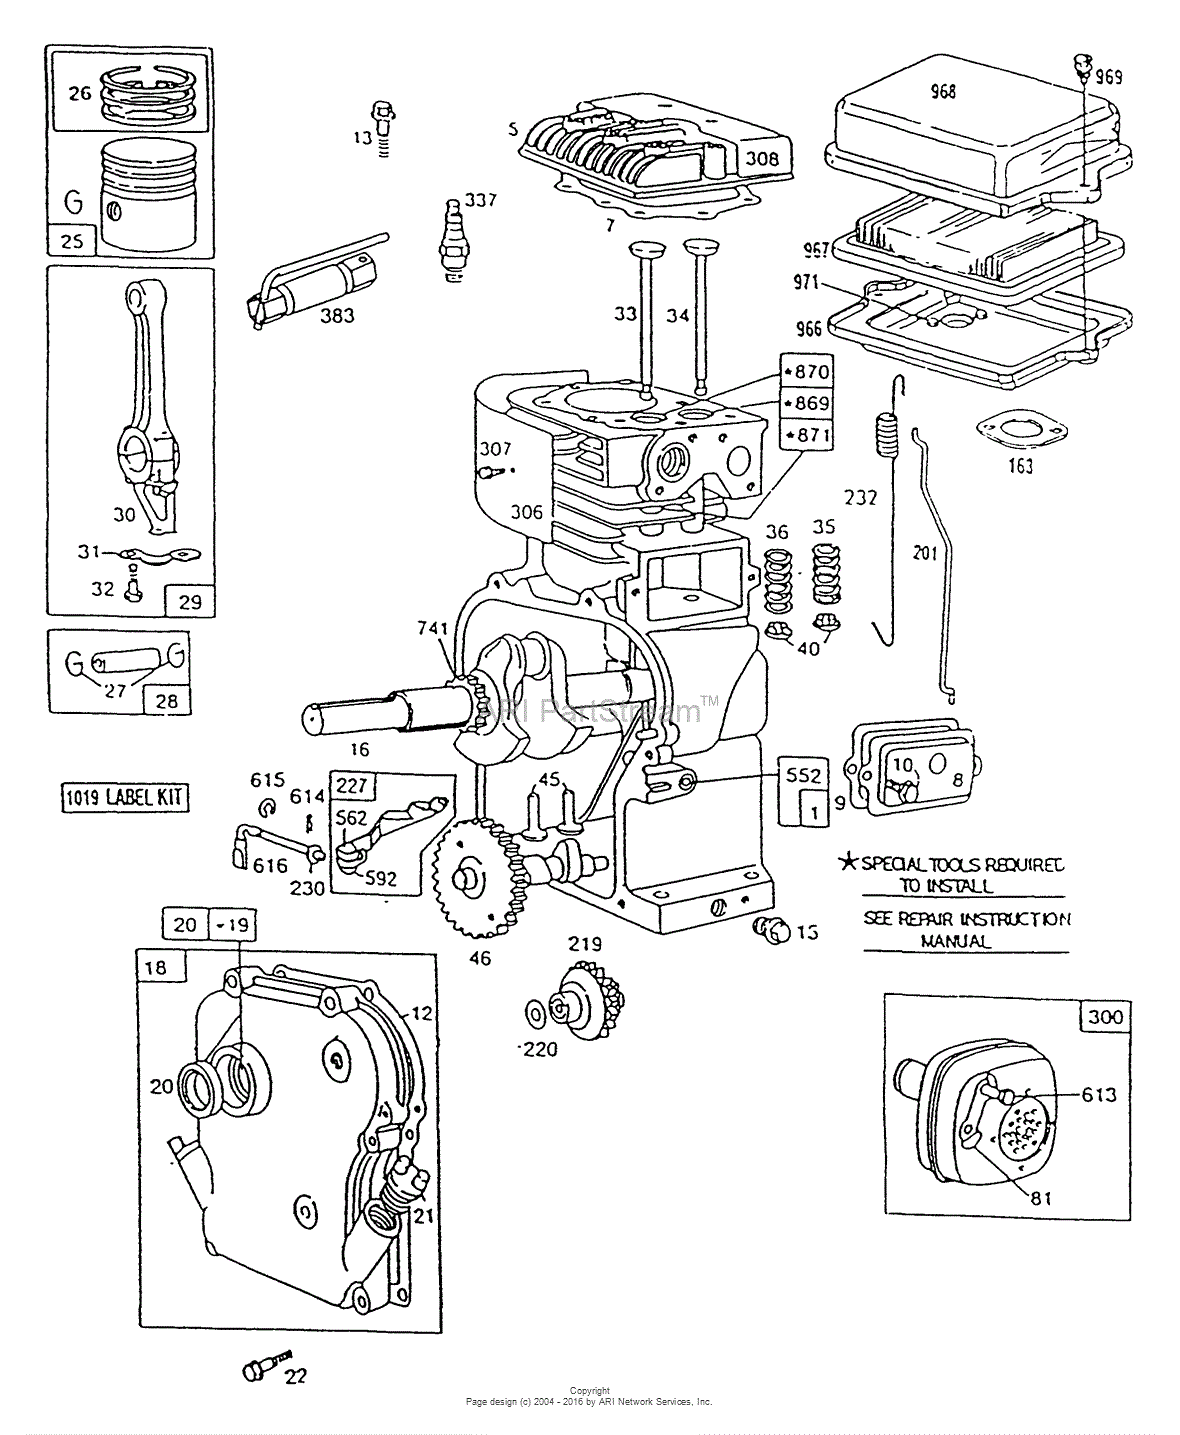 briggs and stratton model 19 manual